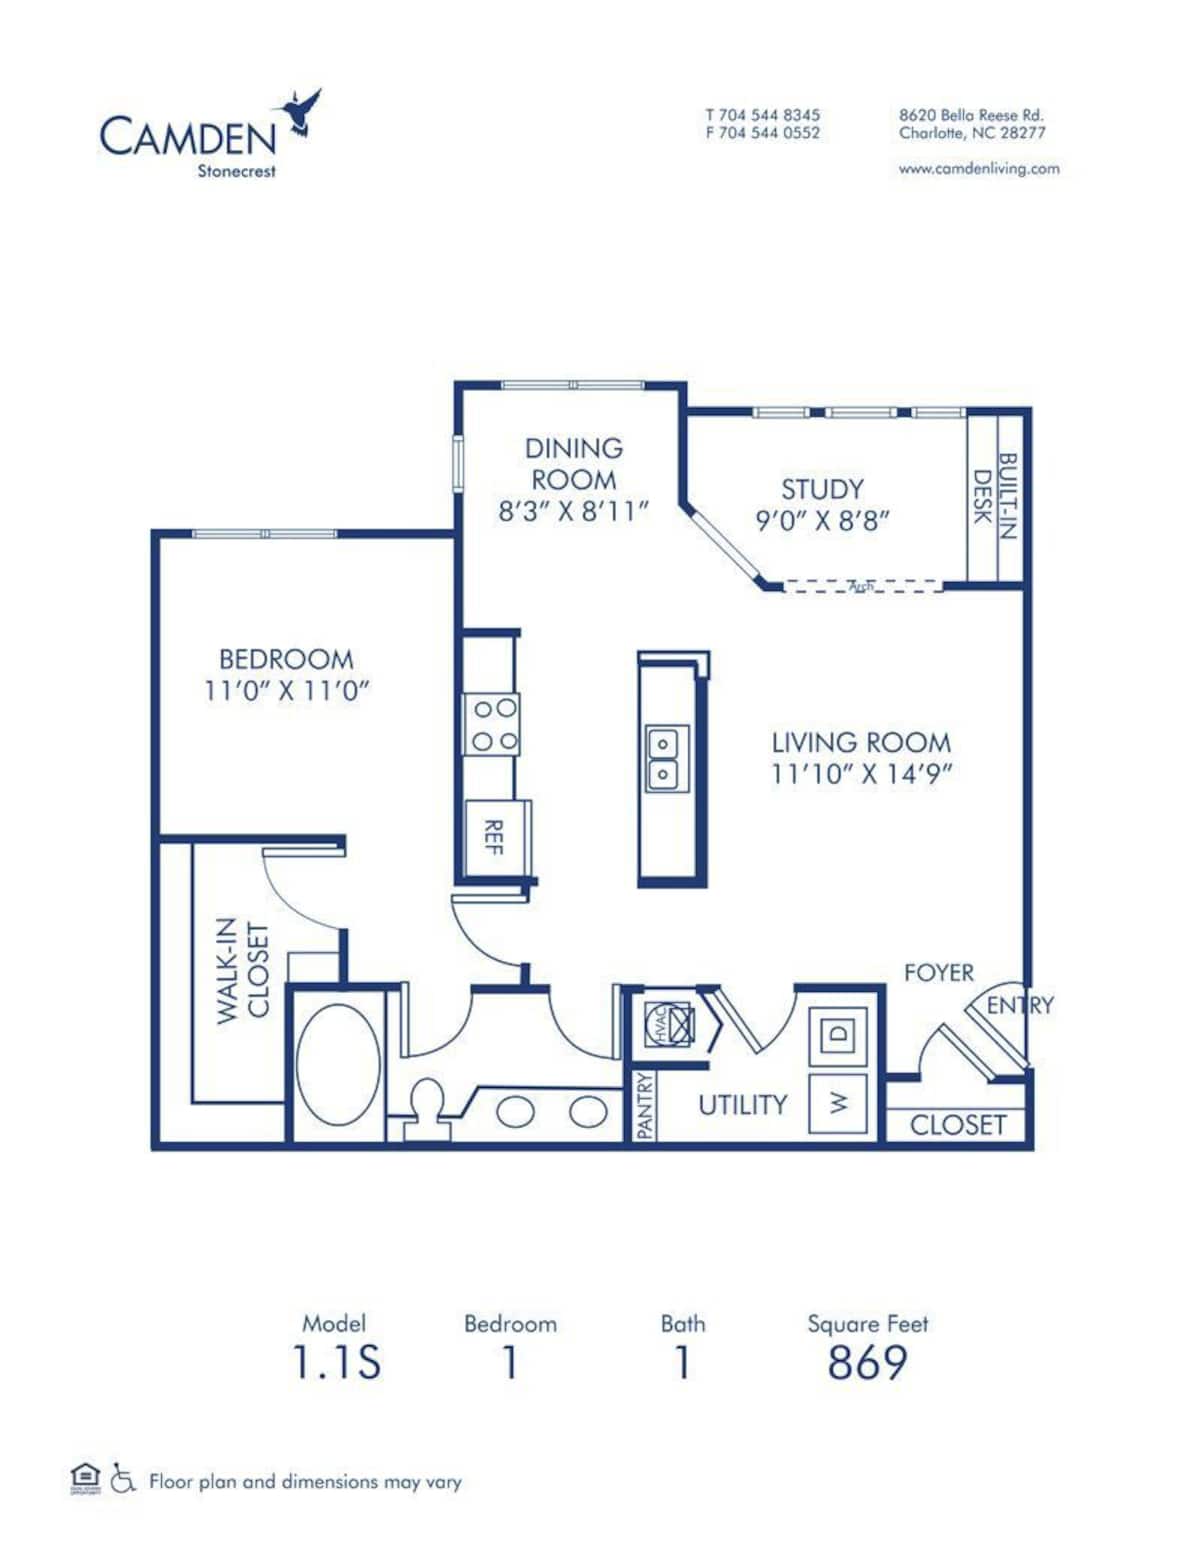 Floorplan diagram for 1.1S, showing 1 bedroom